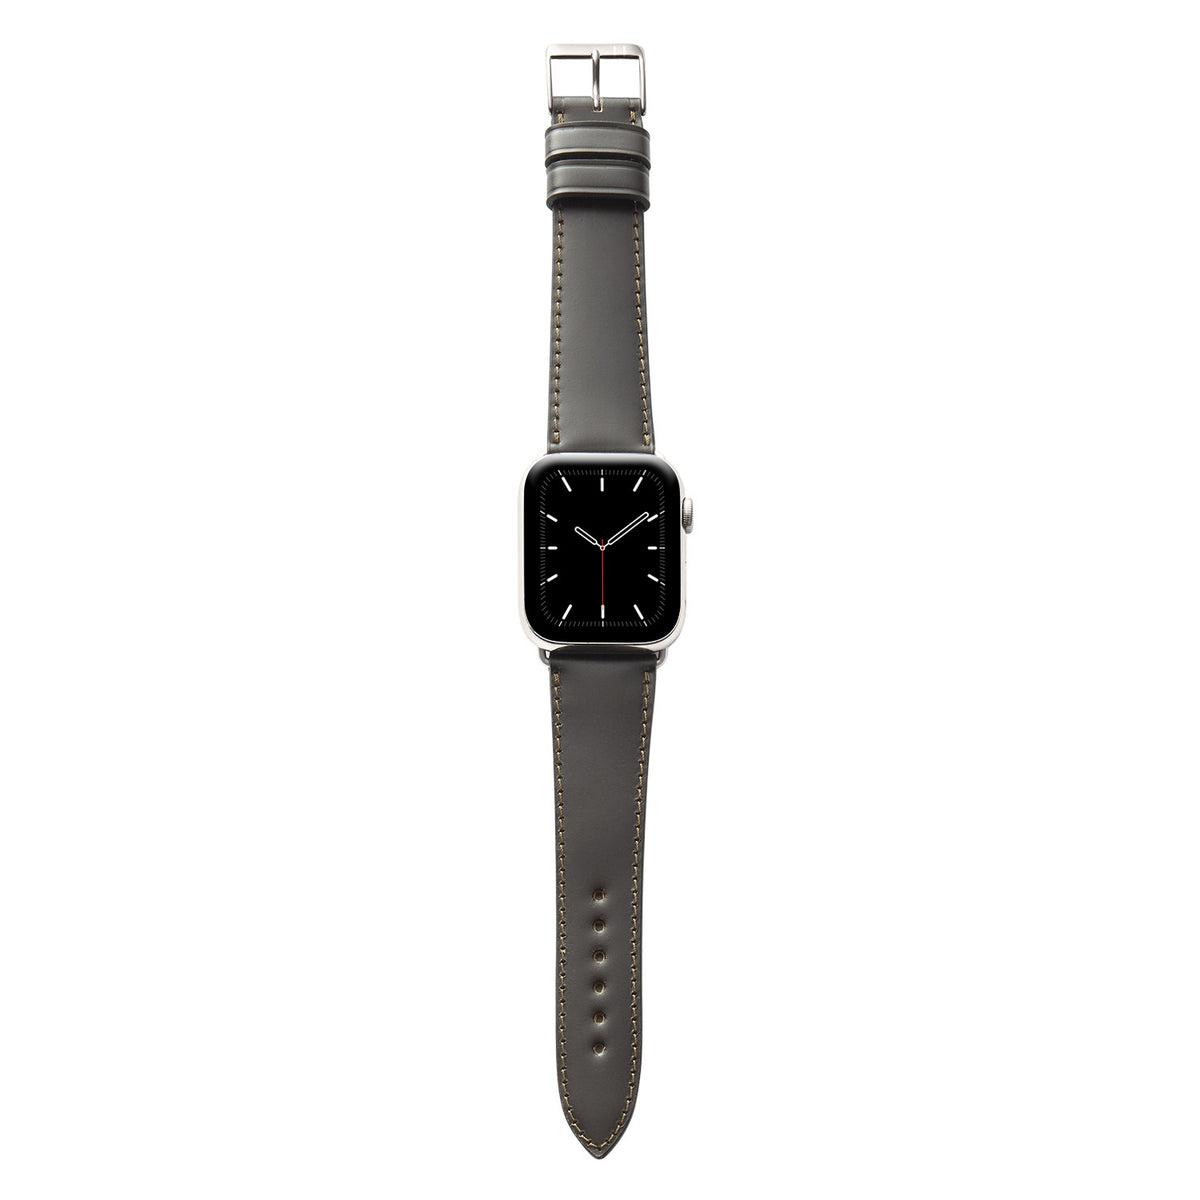 Cinturino in pelle per Apple Watch realizzato in Shell Cordovan &quot;WINTERHUDE&quot; - Moka